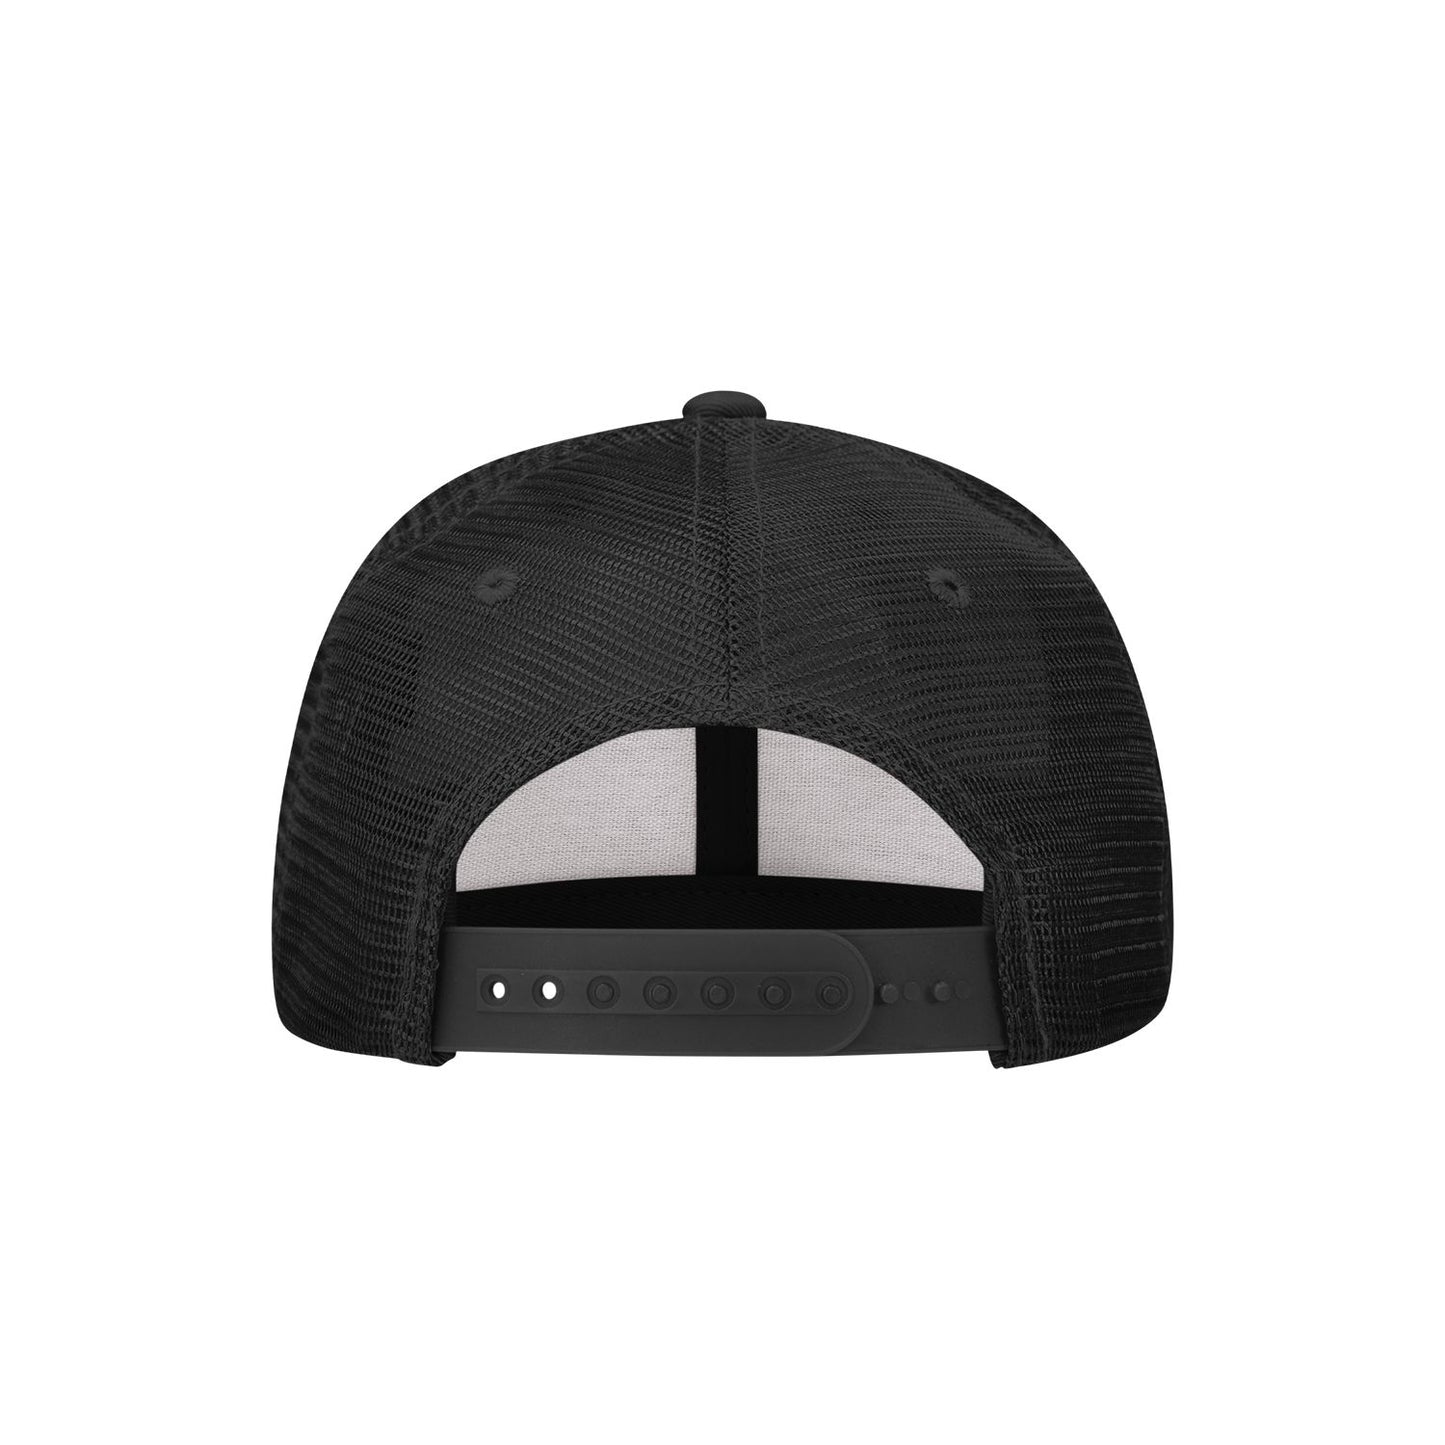 Decky 5010 Kids Youth Trucker Hat, Flat Bill Snapback Cap - Blank